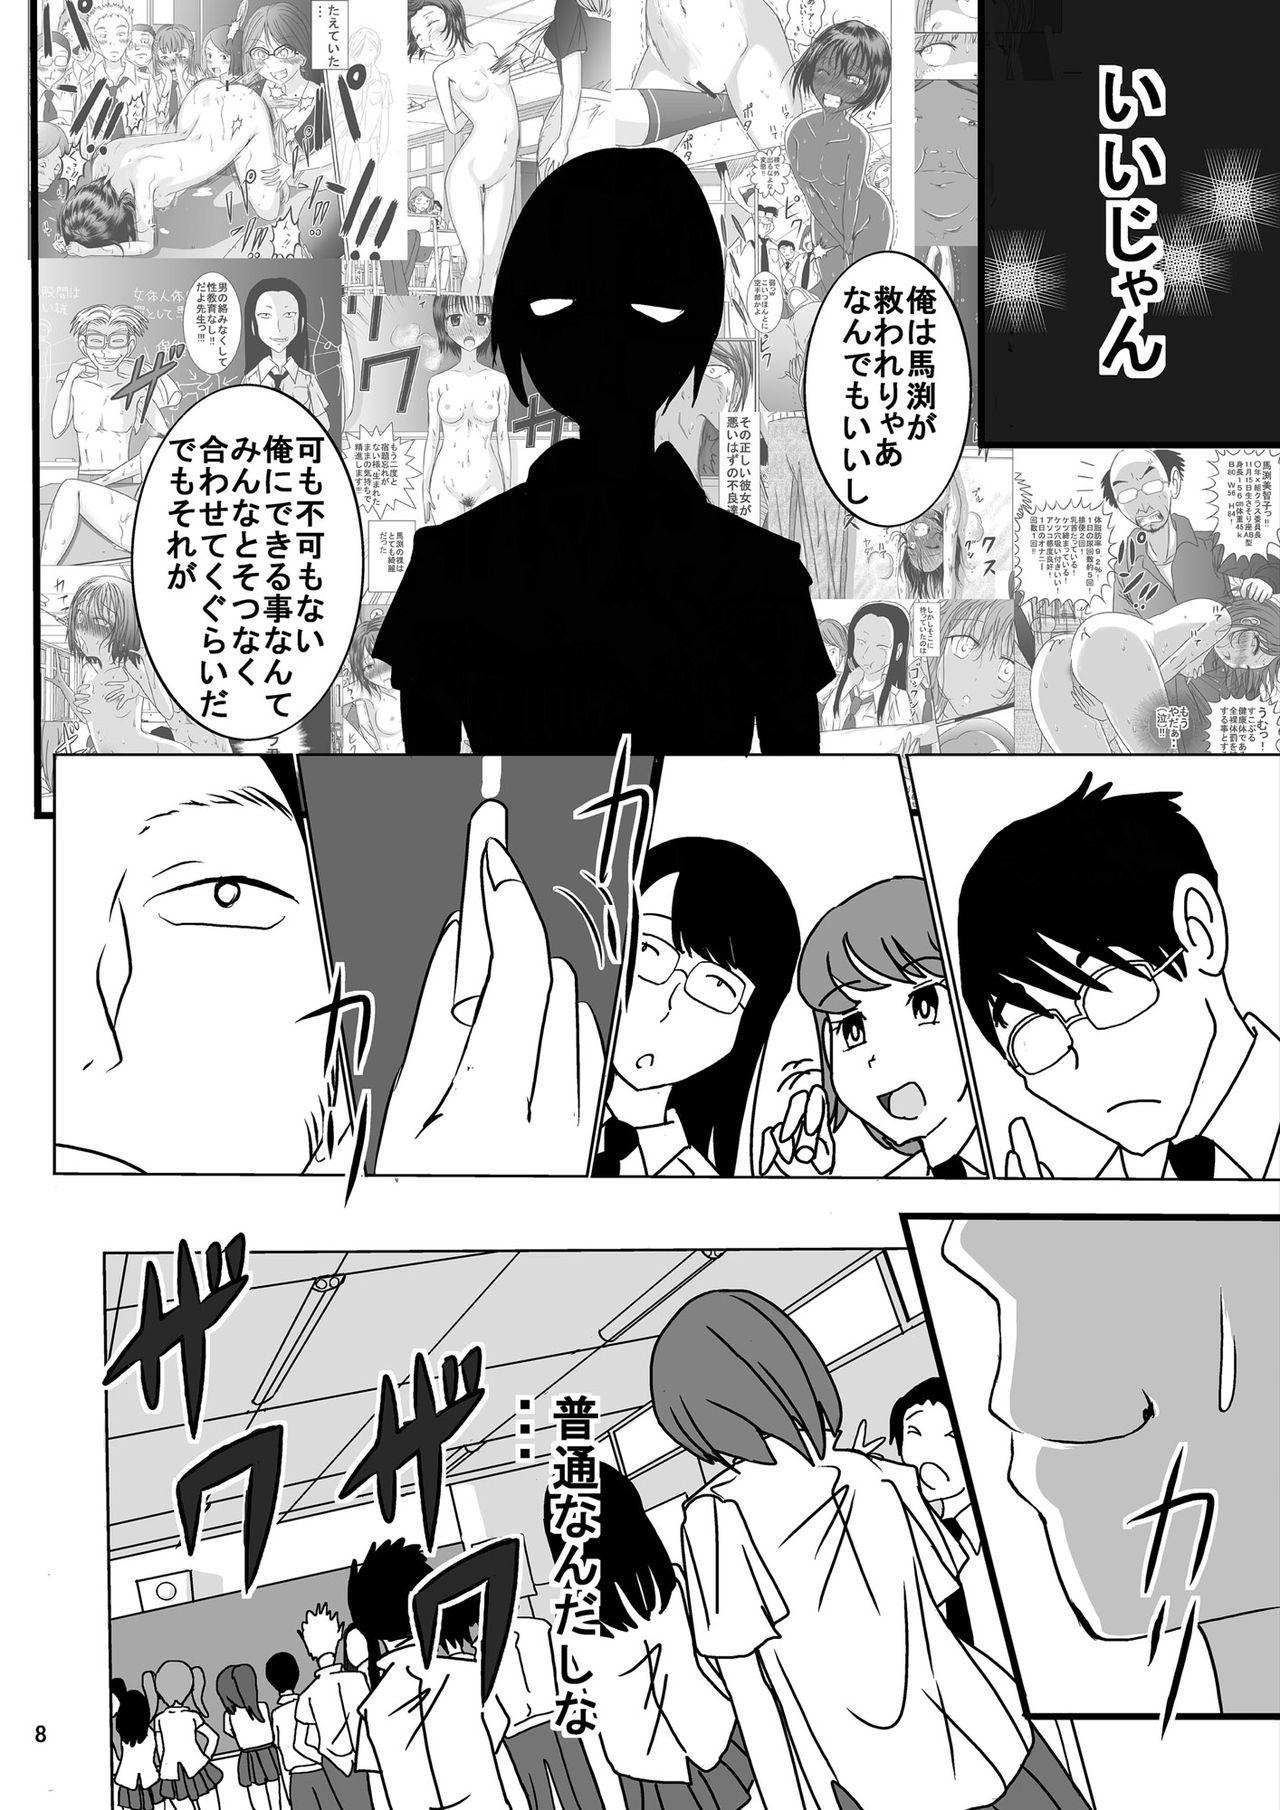 Gym Shukudai Wasuremashitako-san e no Zenra Kyouiku 6 Breeding - Page 8